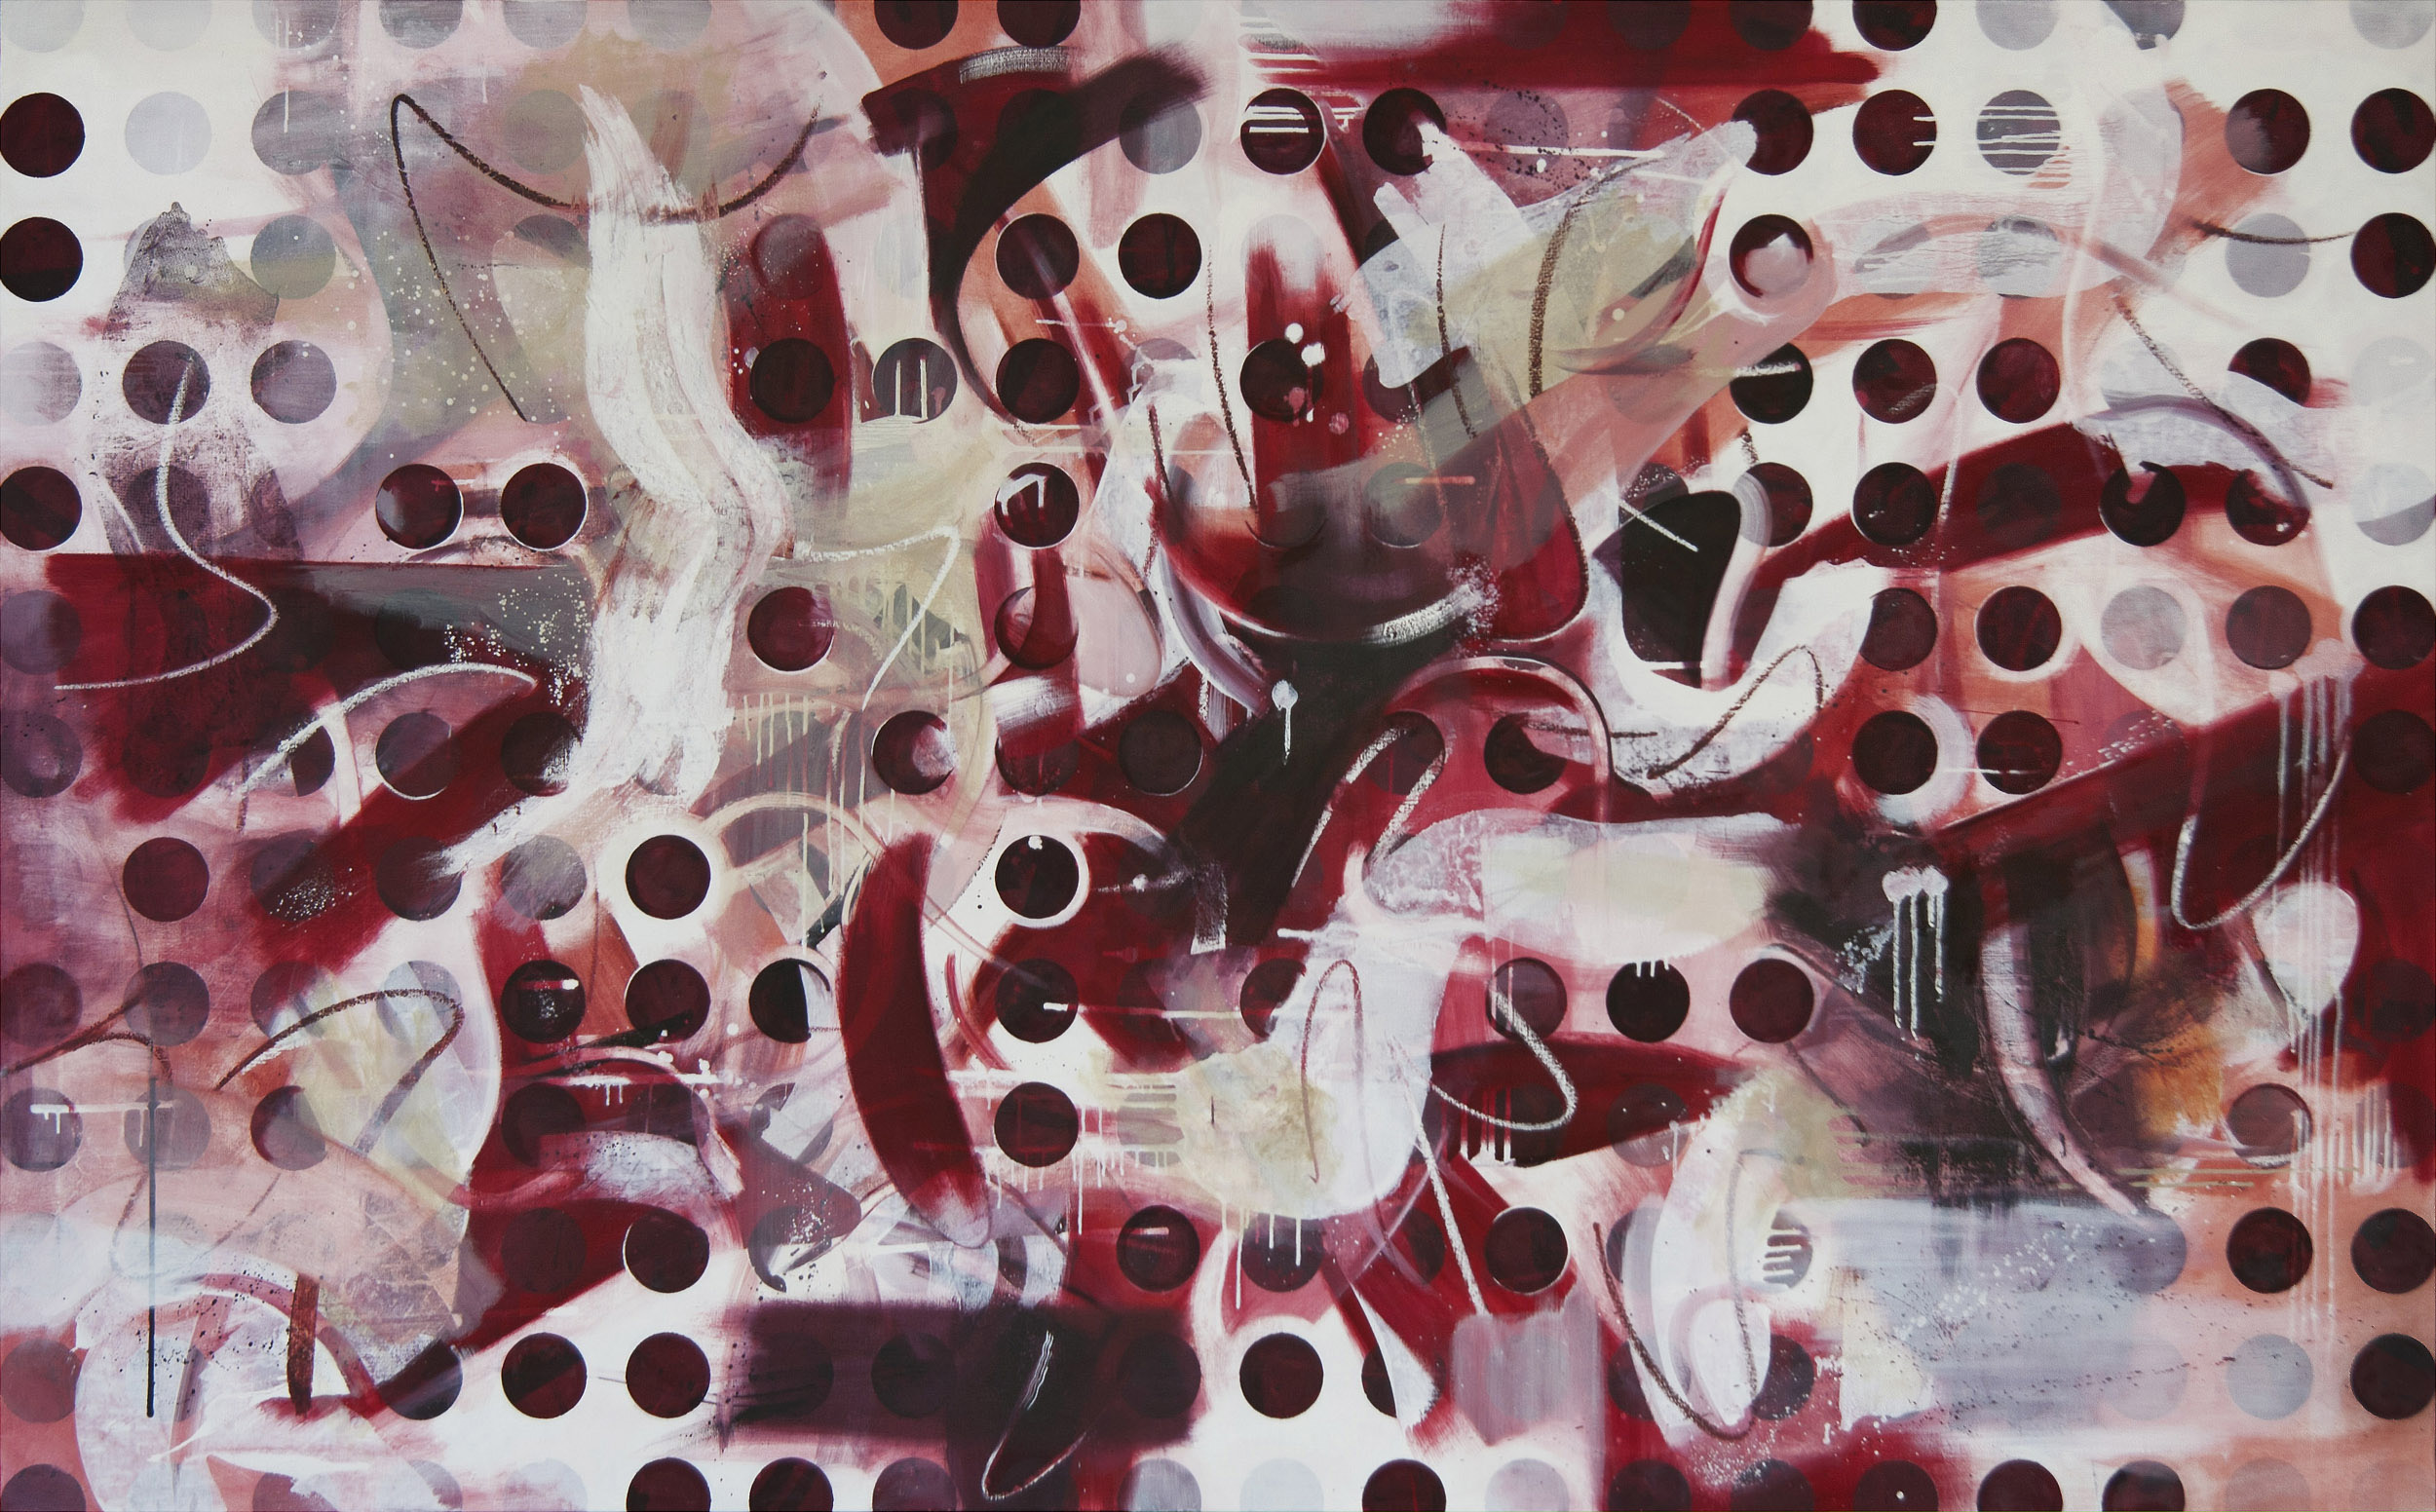 Espacio Carmin, 2014, Acryl and oil on canvas, 130 x 210 cm.